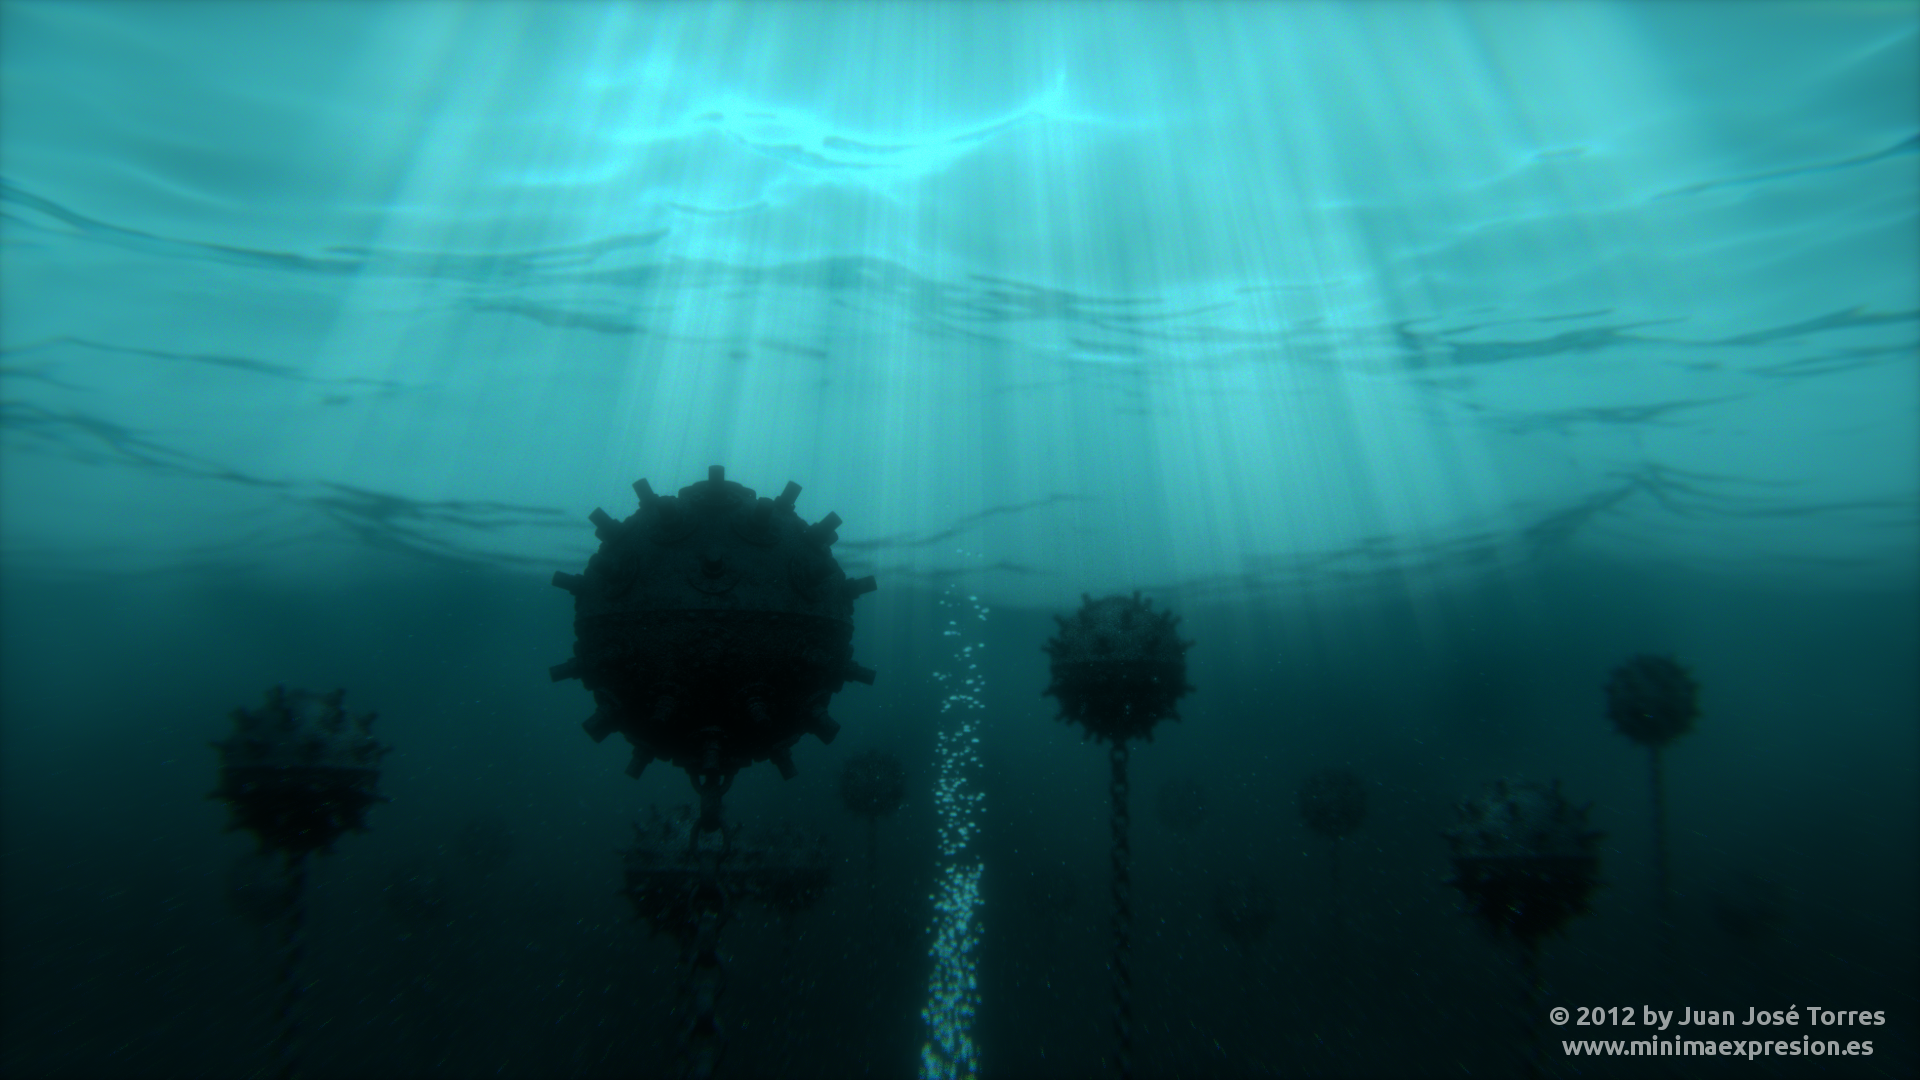 Underwater Minefield - version 2